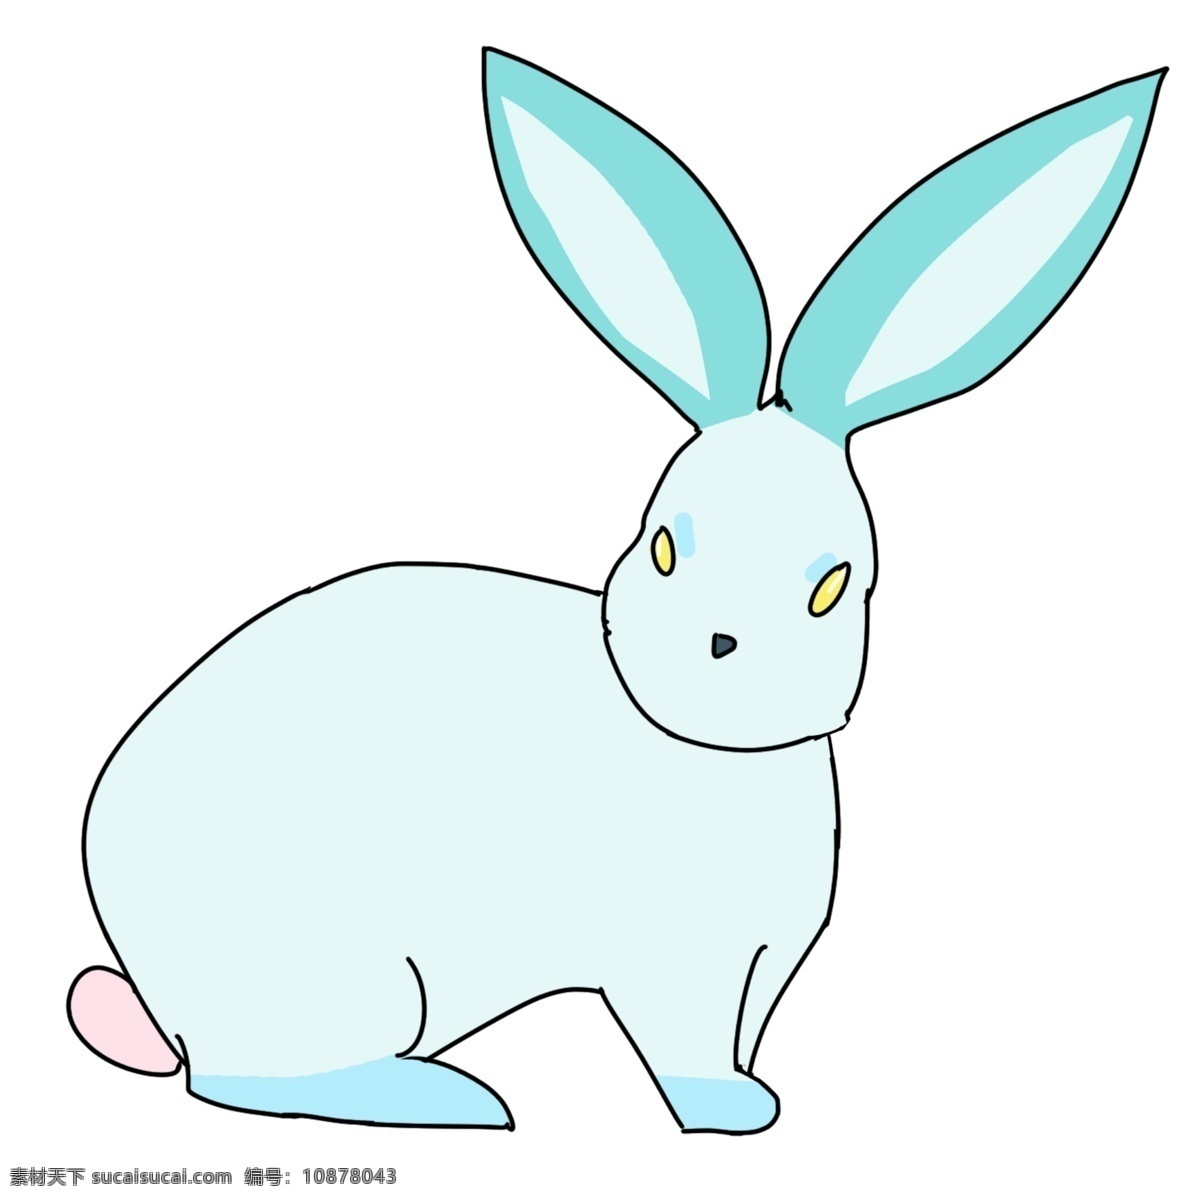 蓝色 复活节 兔子 插图 蓝色兔子 一只兔子 漂亮的兔子 立体兔子 精致的兔子 可爱的兔子 毛茸茸的兔子